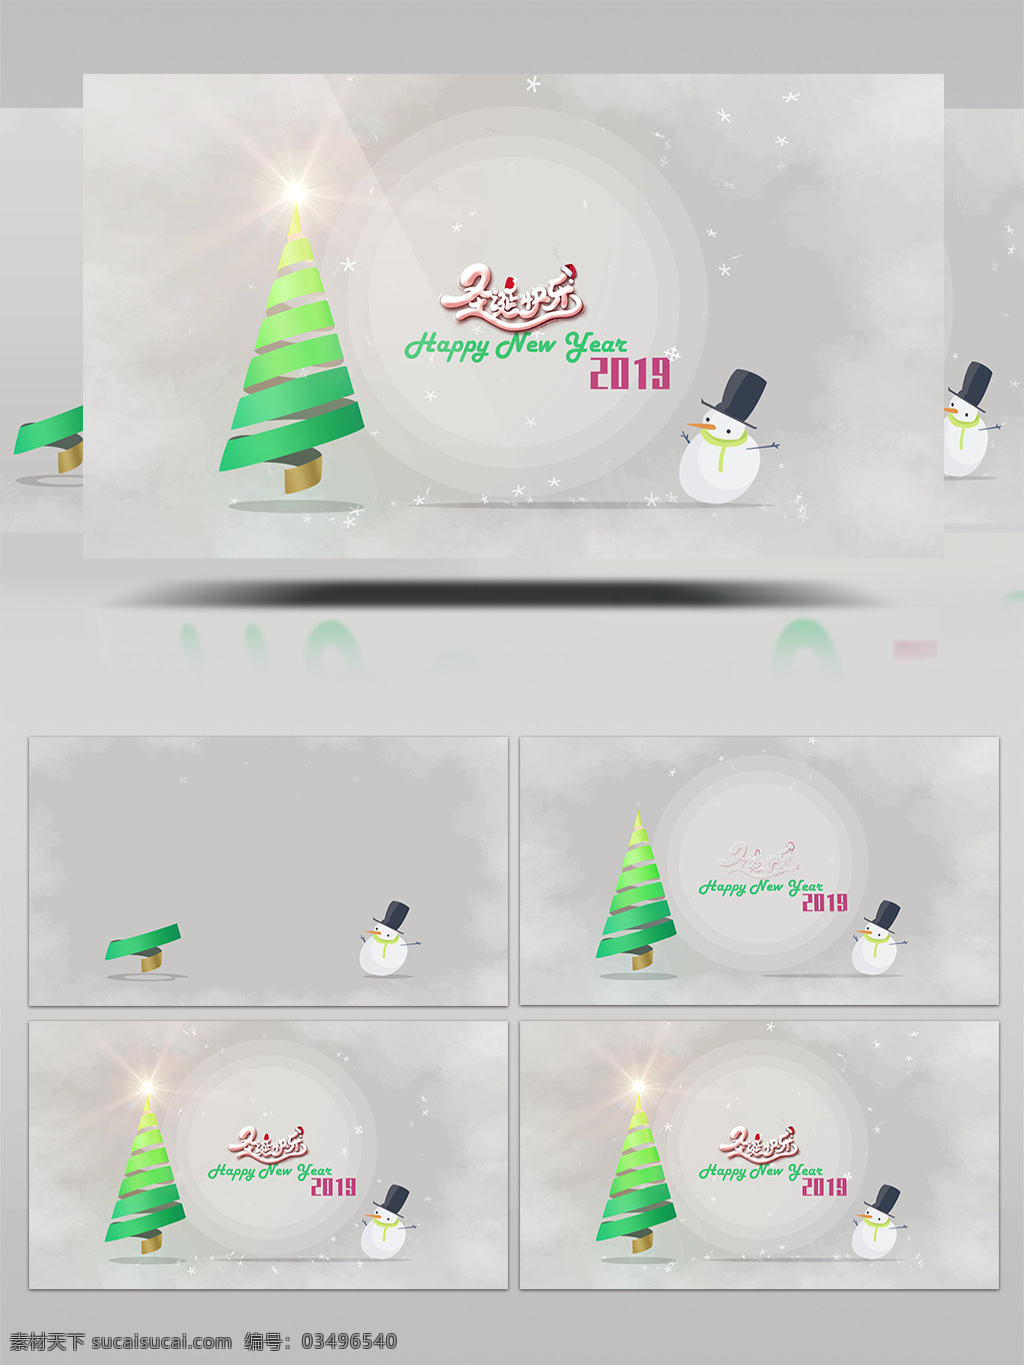 2019 圣诞节 节日 庆祝 开场 mg 视频 相册 包装 雪景 雪花 片头 片尾 周年 日 纪念 展示 冰雪 麋鹿 圣诞老人